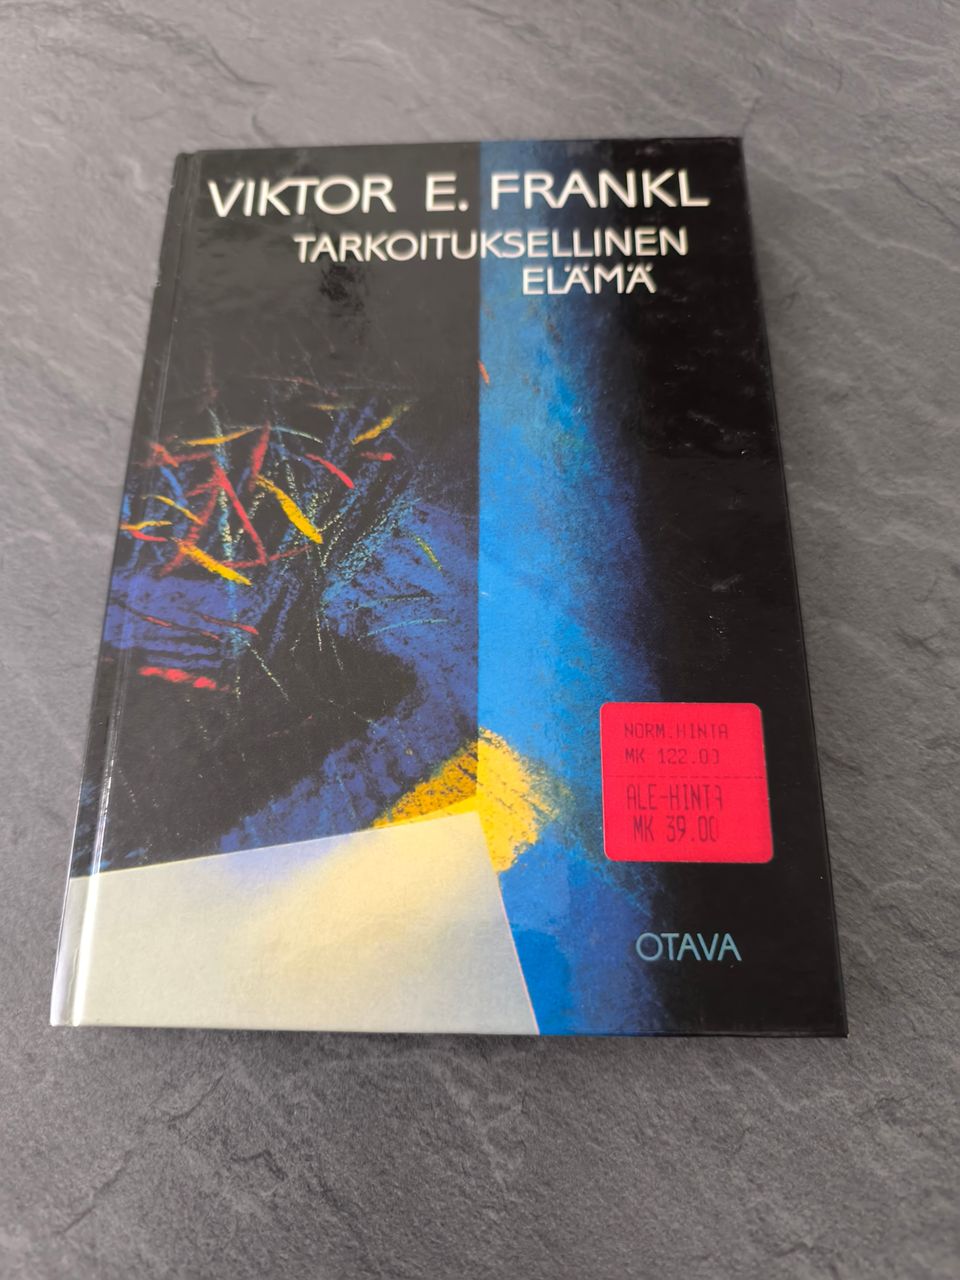 Tarkoituksellinen elämä - Viktor Frankl